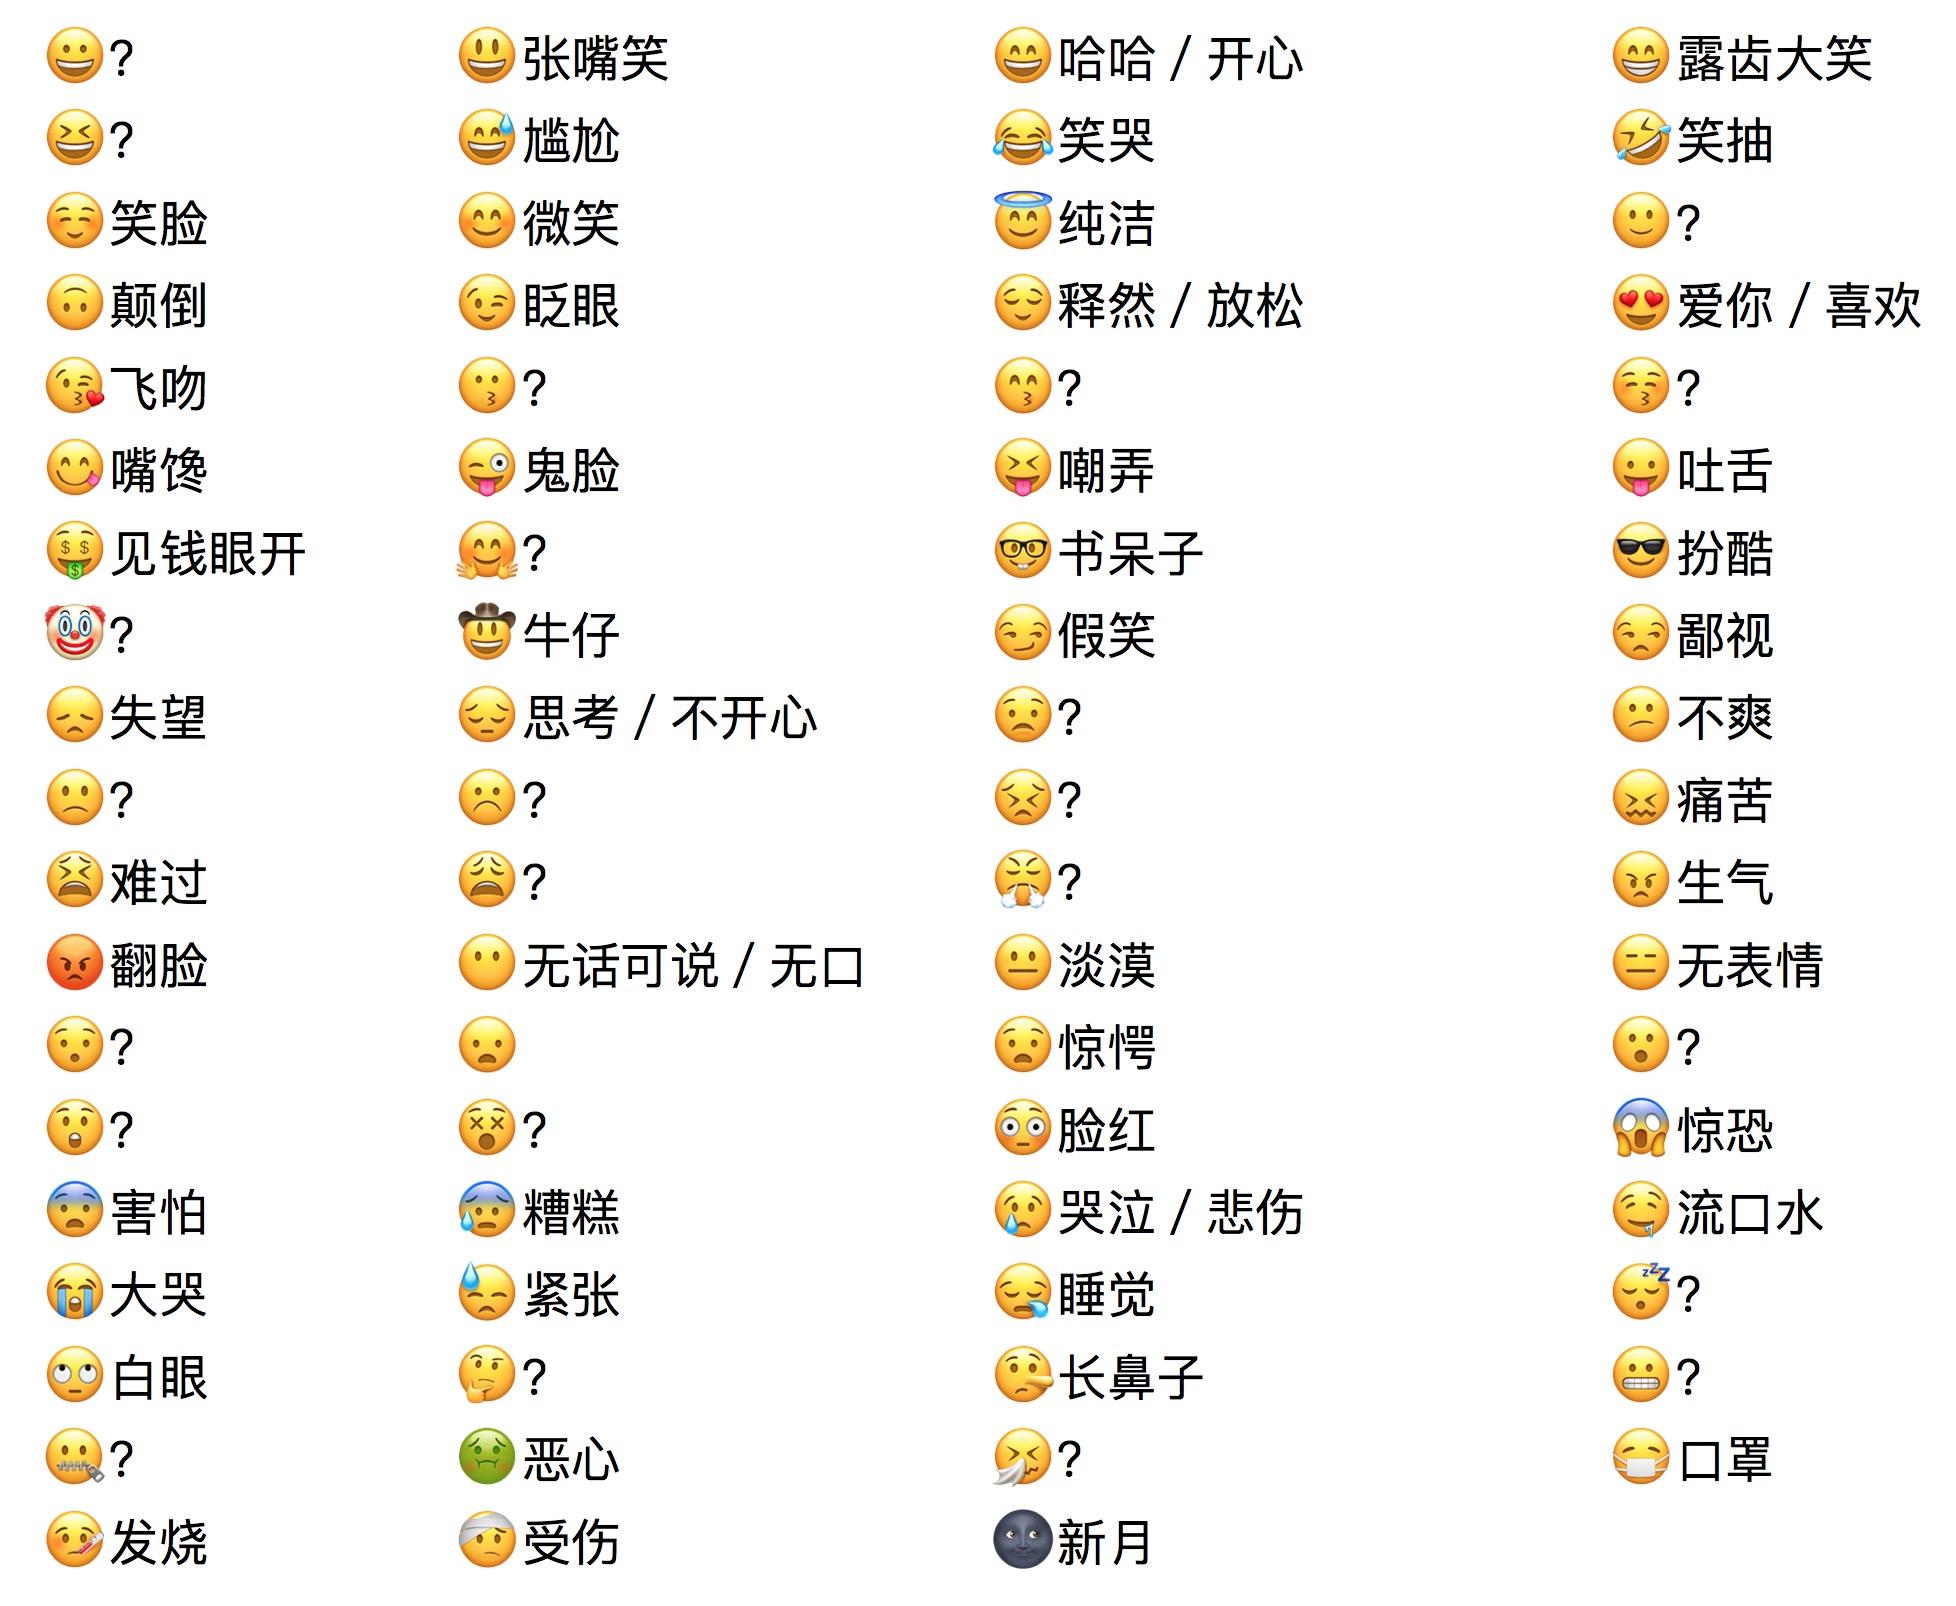 请问苹果手机上的绘文字(emoji)表情对应的中文输入词语是什么?